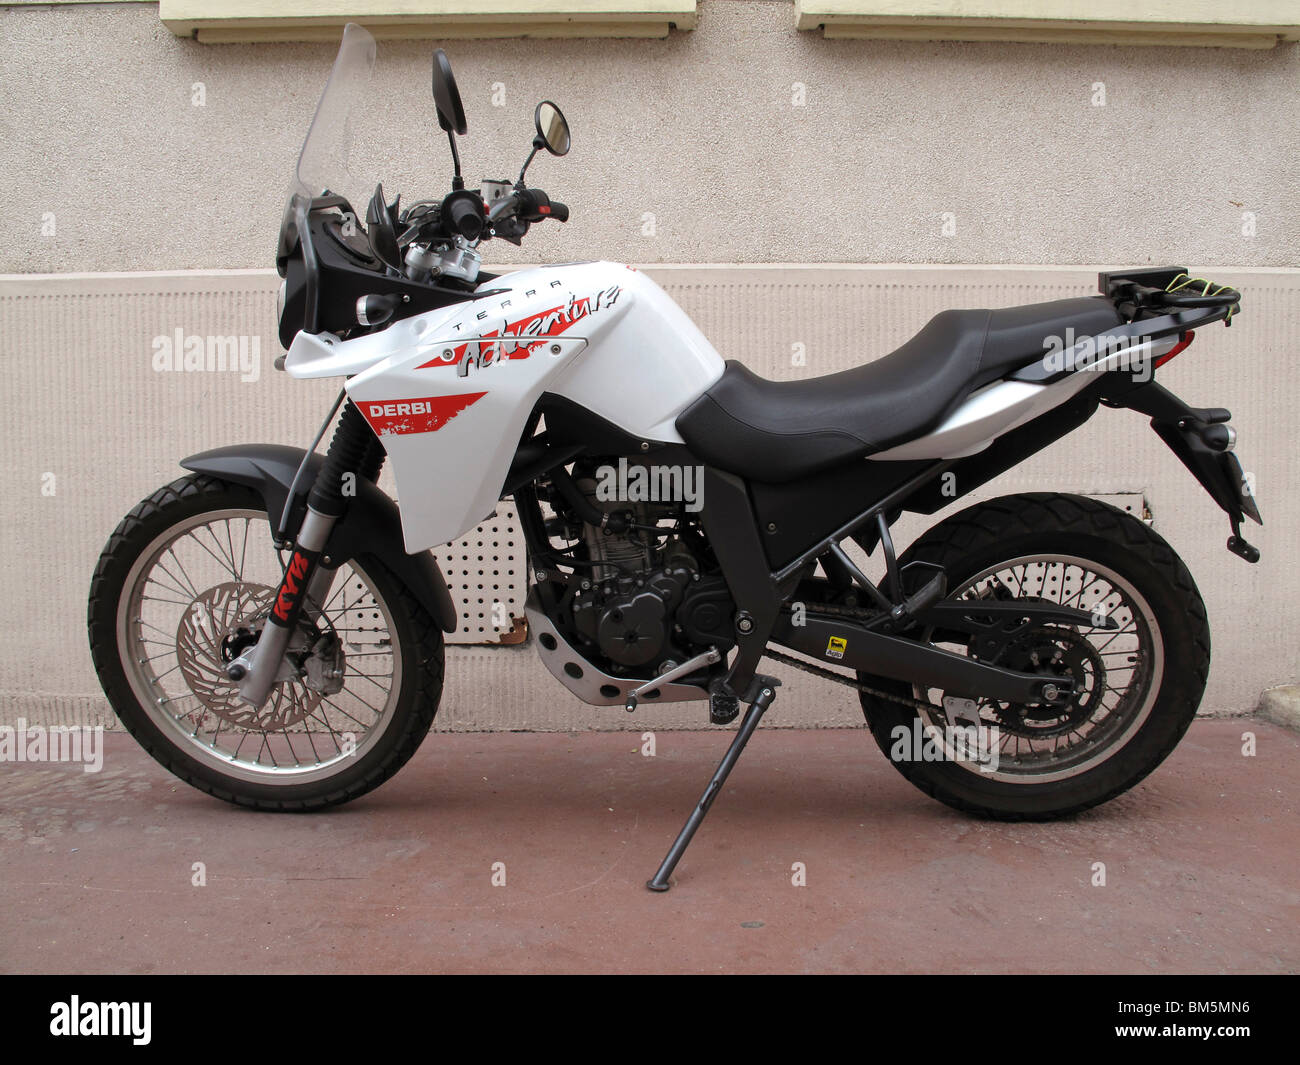 Derbi,aventura,Terra 125cc moto hecha en España Foto de stock